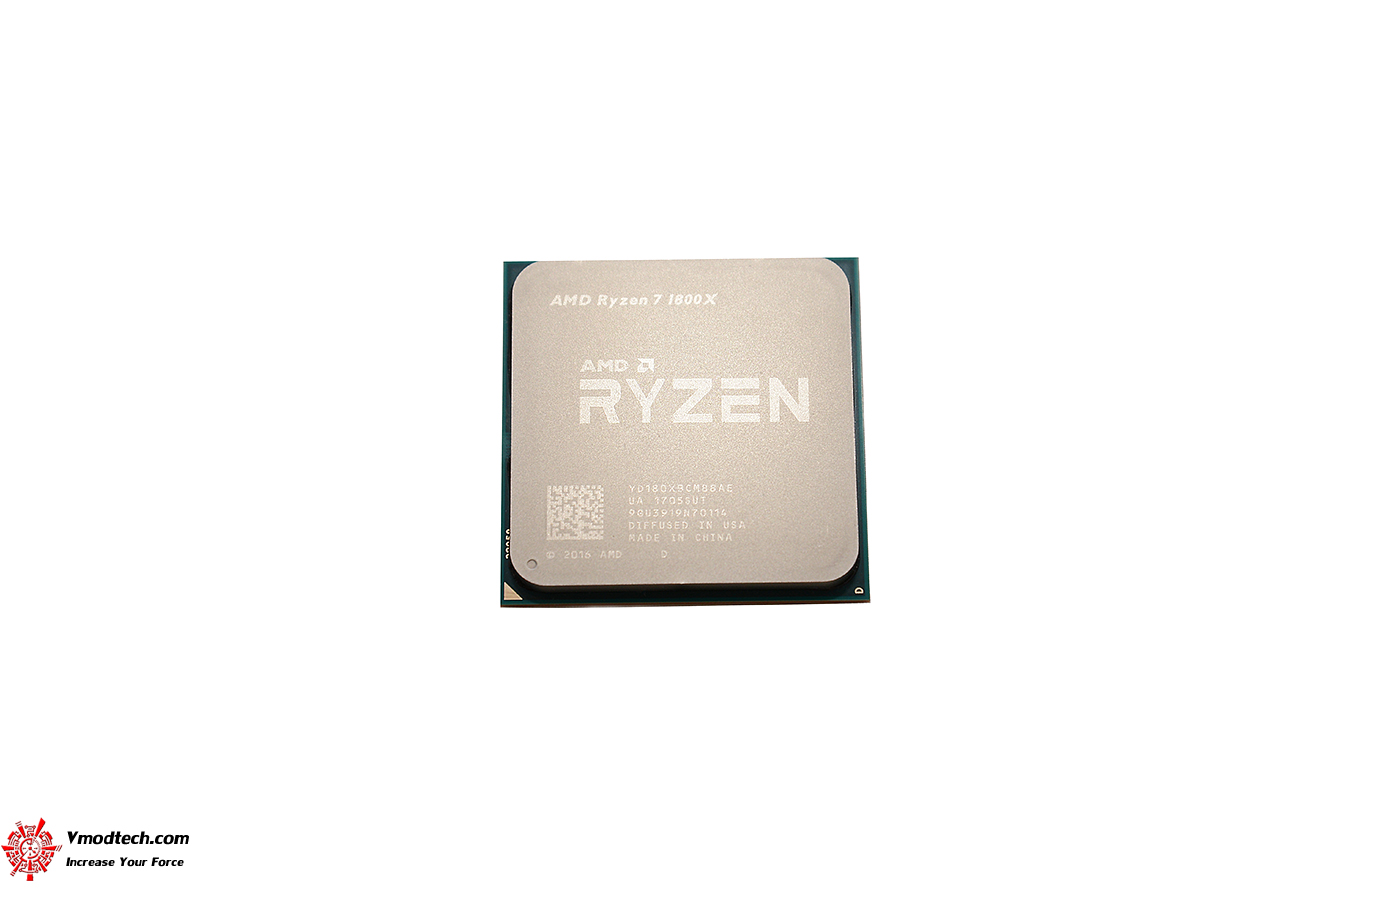 dsc 5843 AMD RYZEN 7 1800X REVIEW 